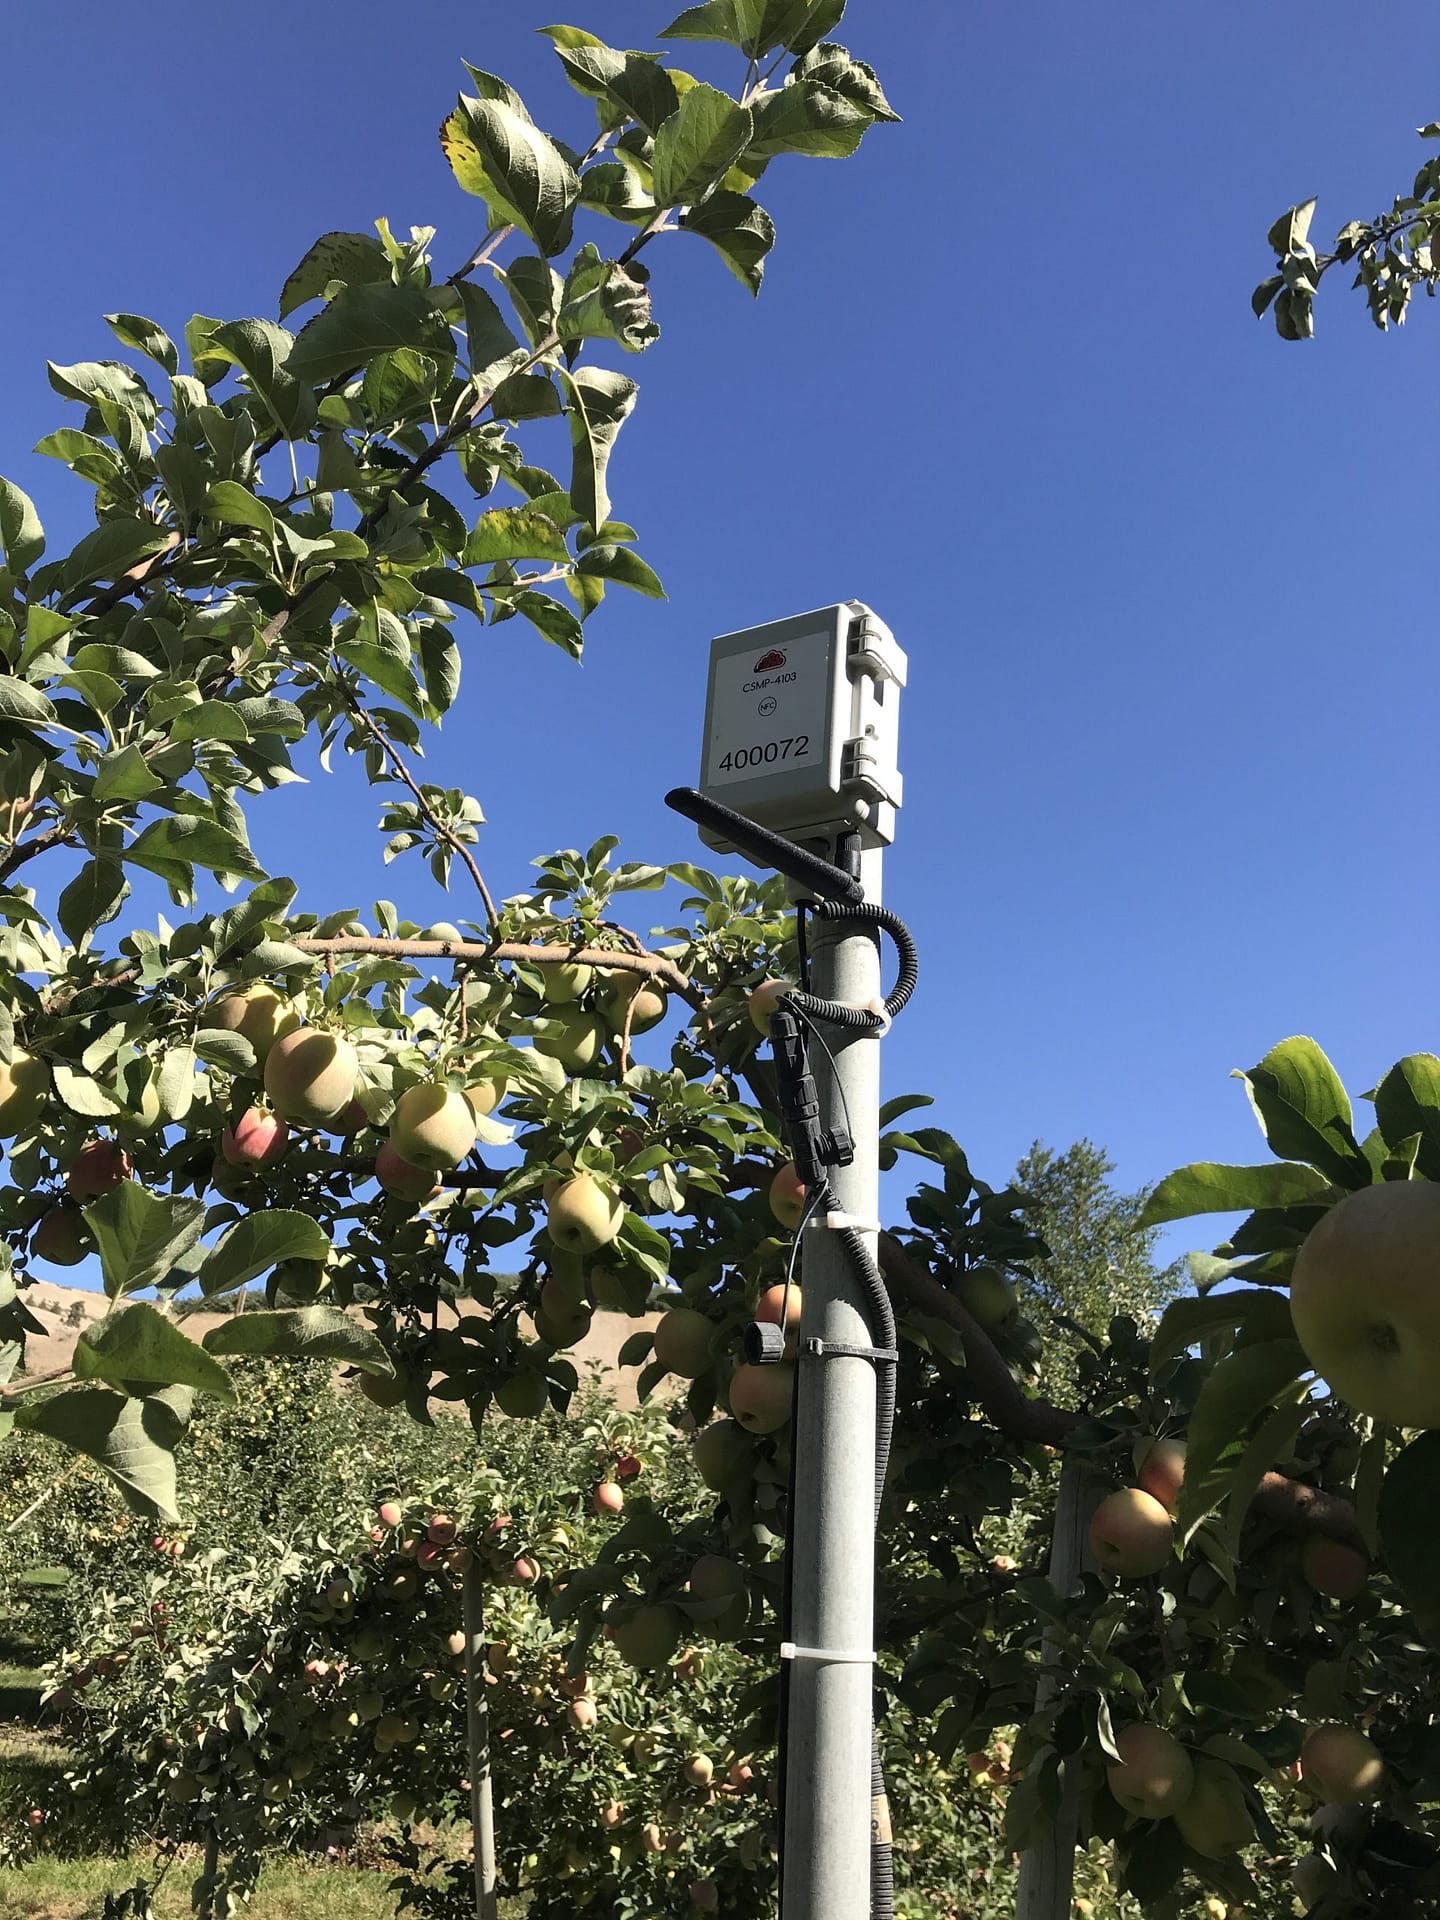 Zenseio Orchard Monitoring